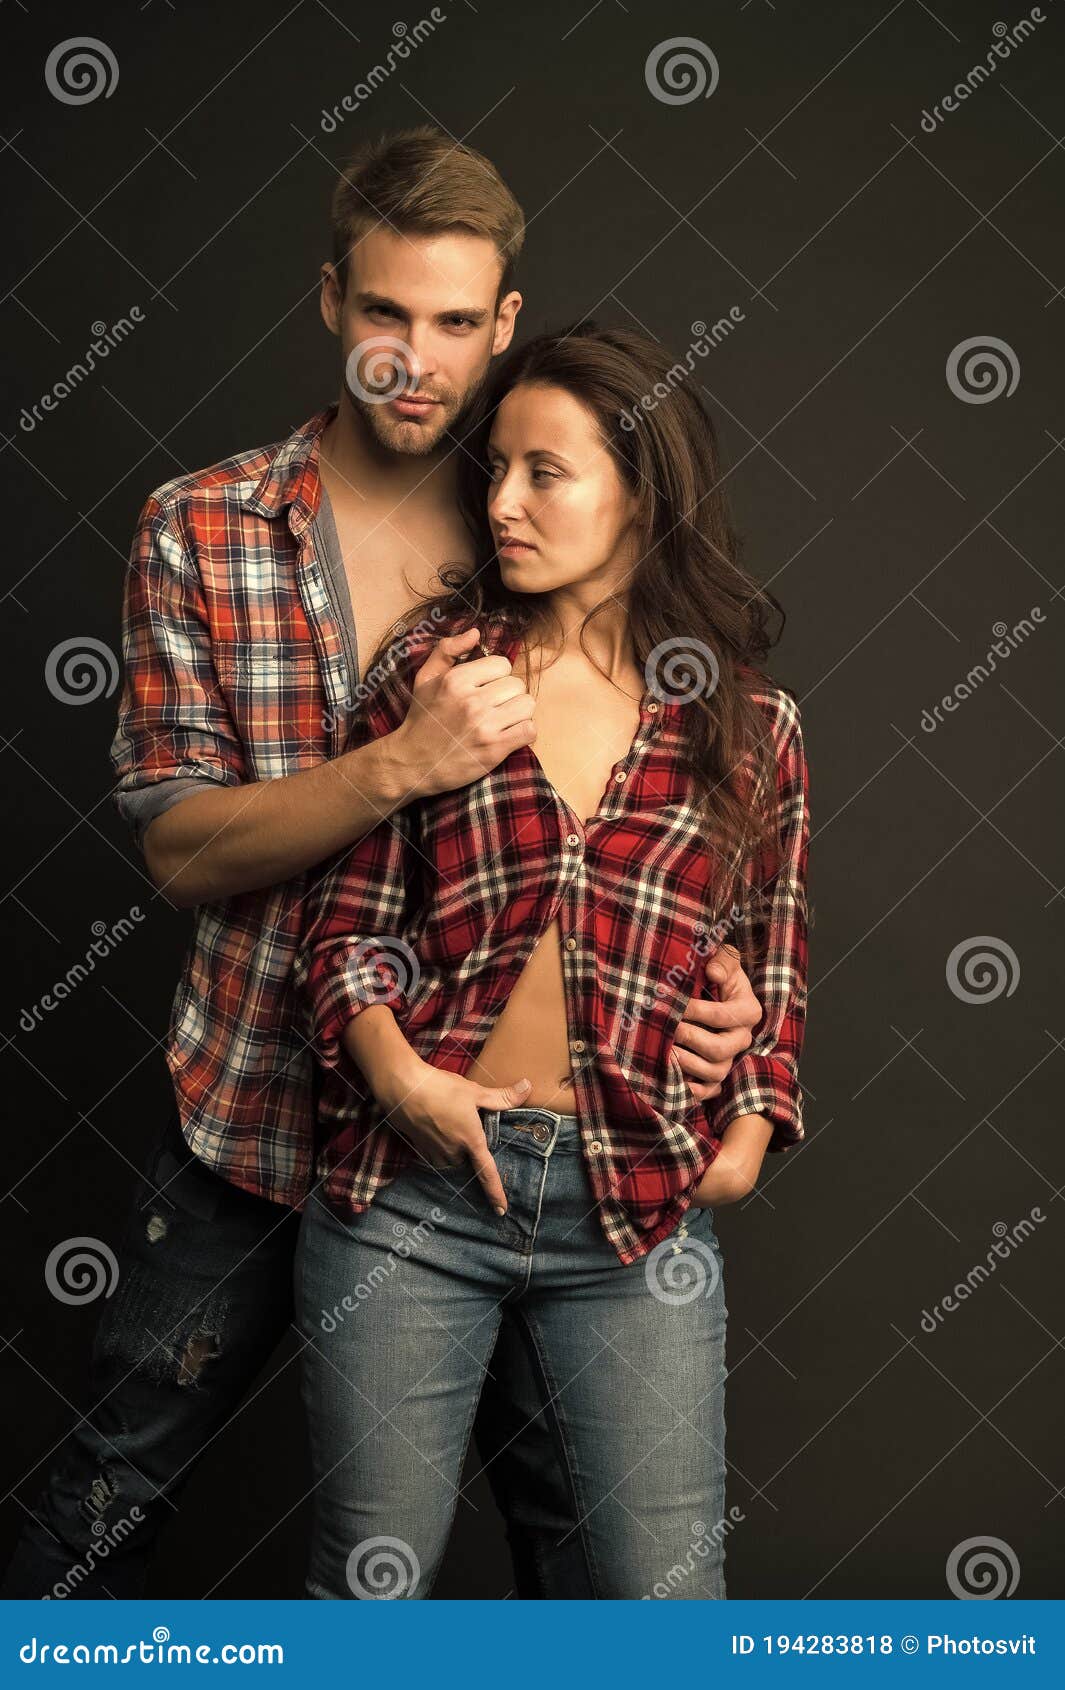 hot couple girl face down sex photo